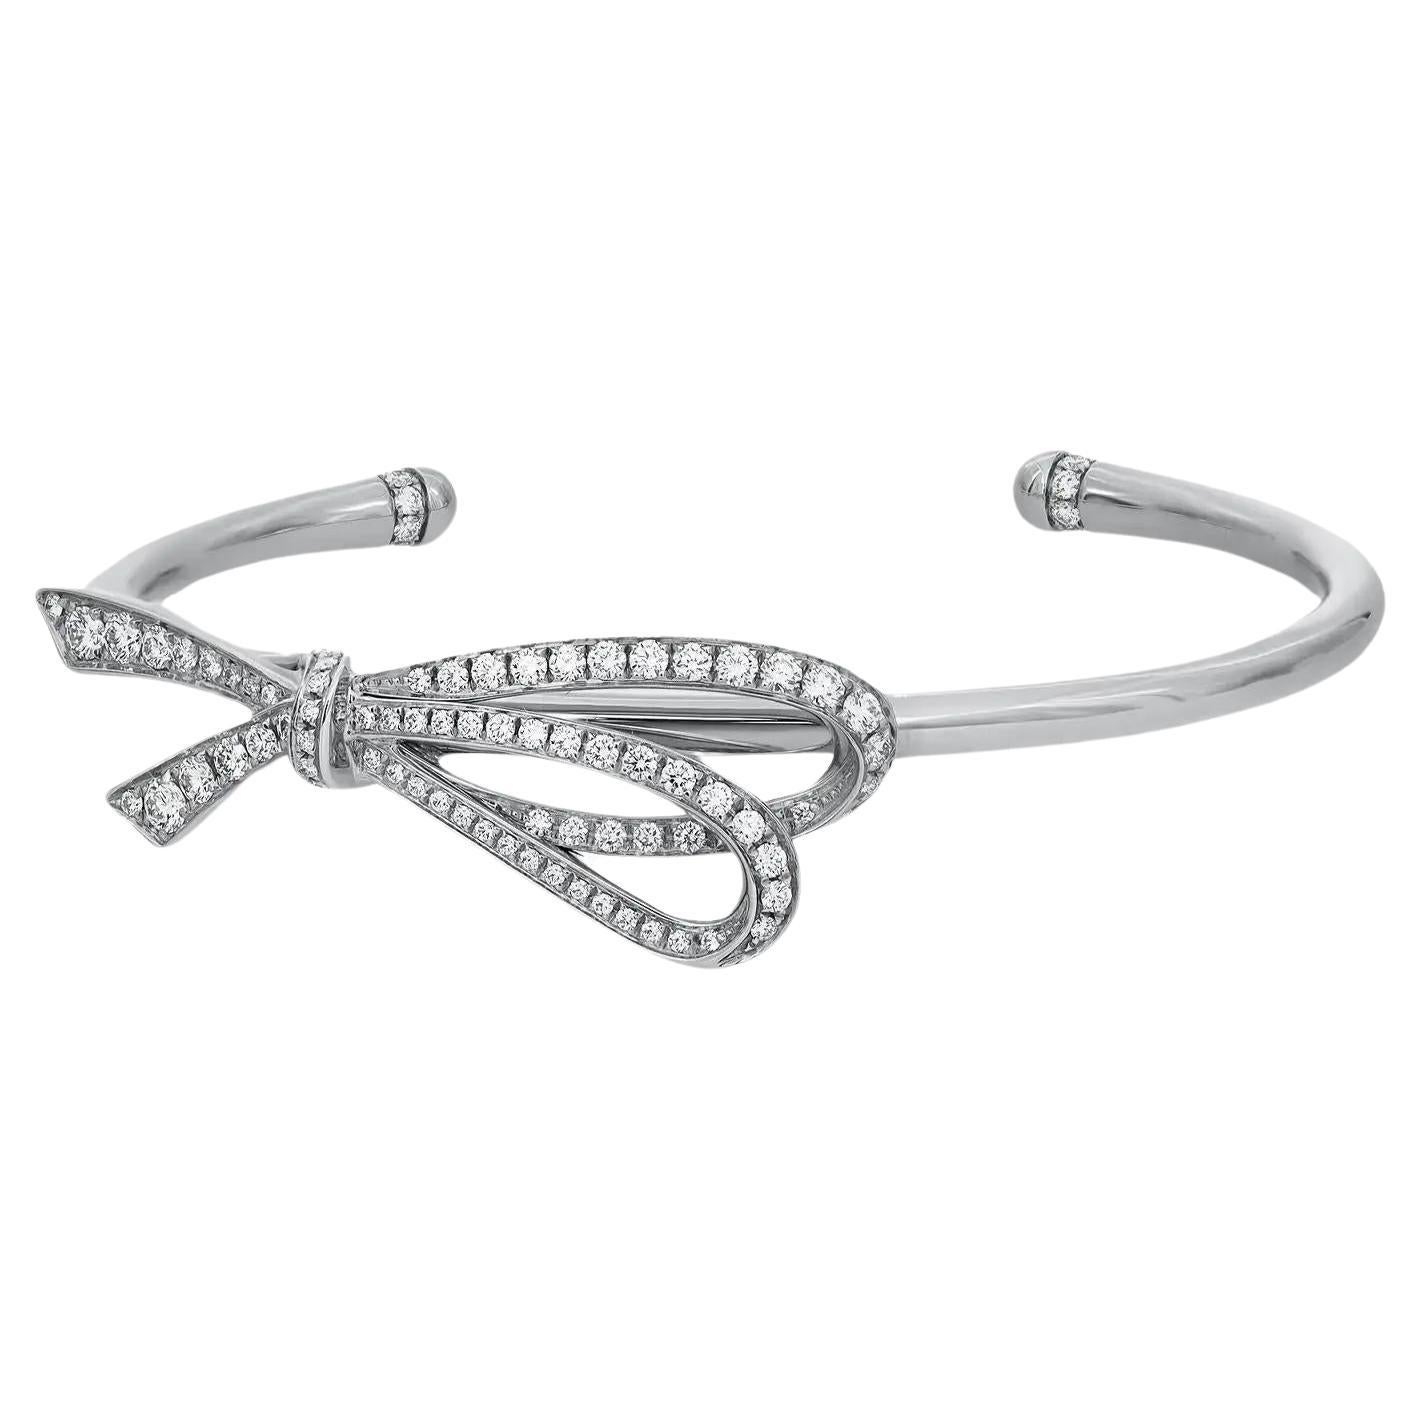 Tiffiany & Co. Diamond Large Bow Cuff Bracelet 18K White Gold Size Medium